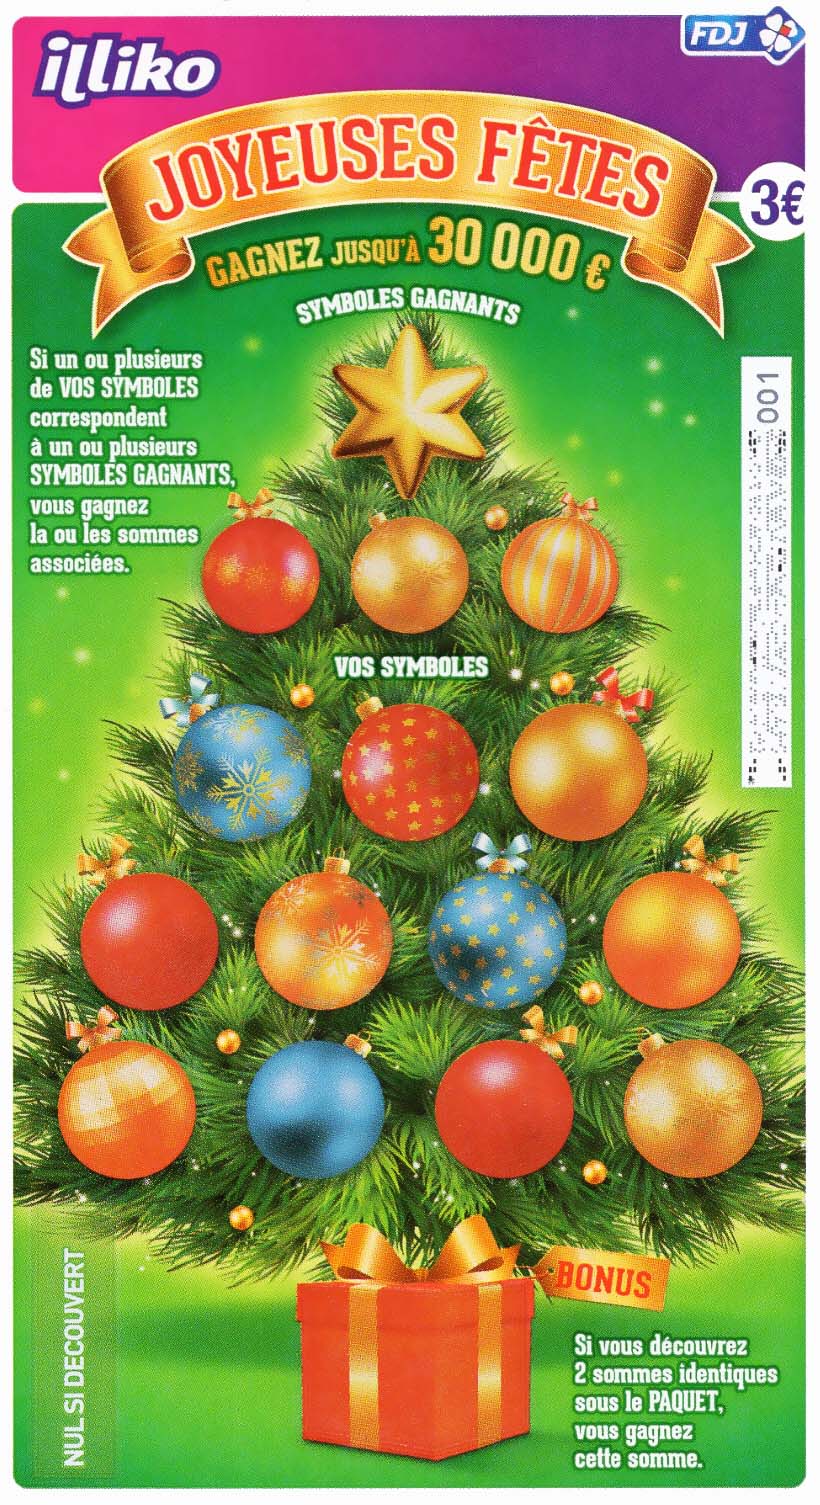 La pochette de Noël (2020) • FDJ/Illiko 🎄 